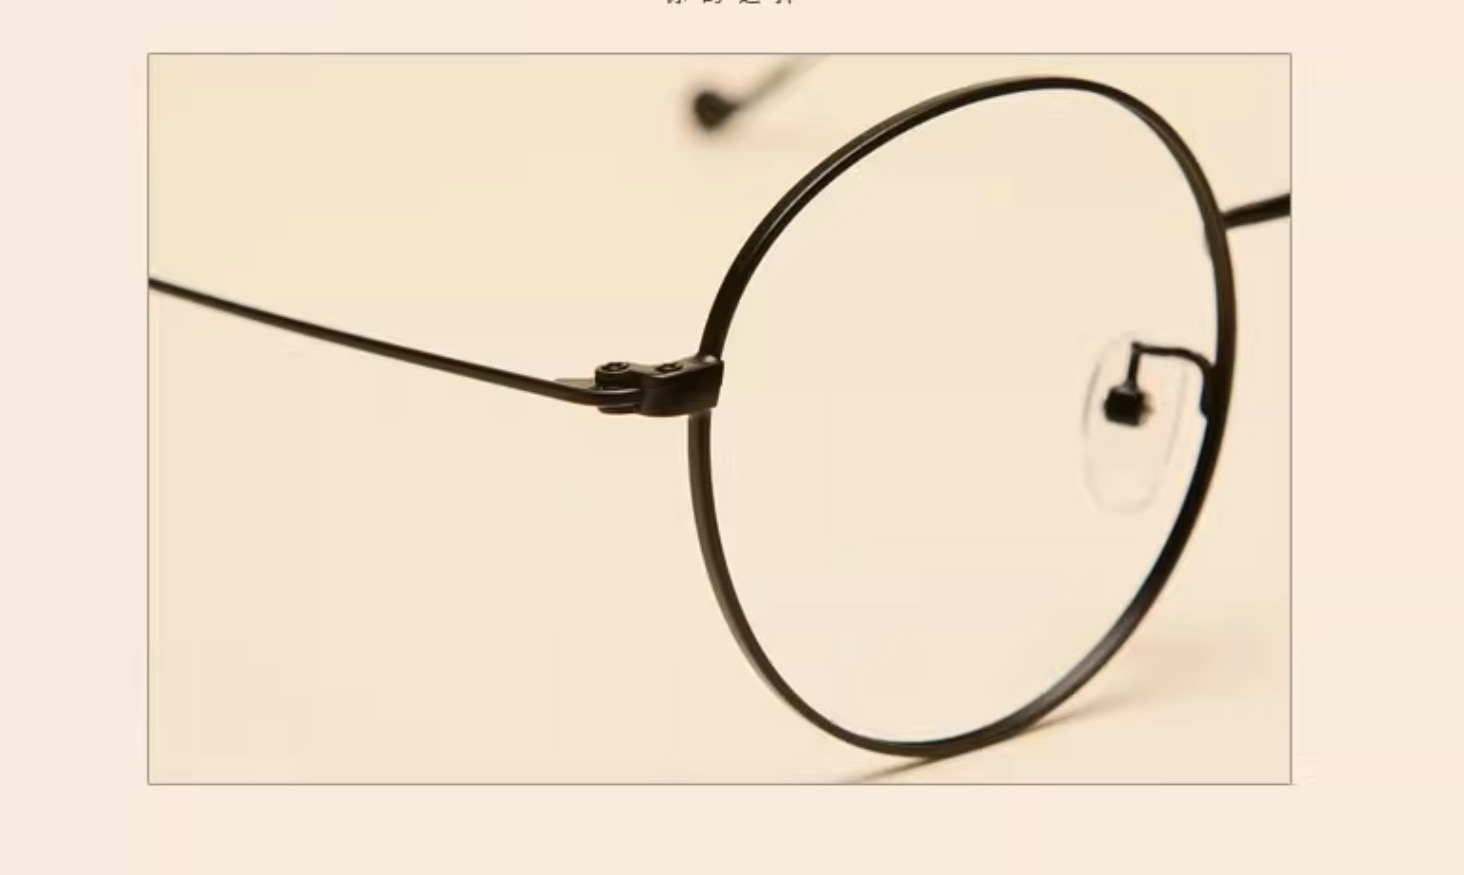 鯖江大きいフレーム眼鏡超軽量メガネおしゃれメタル